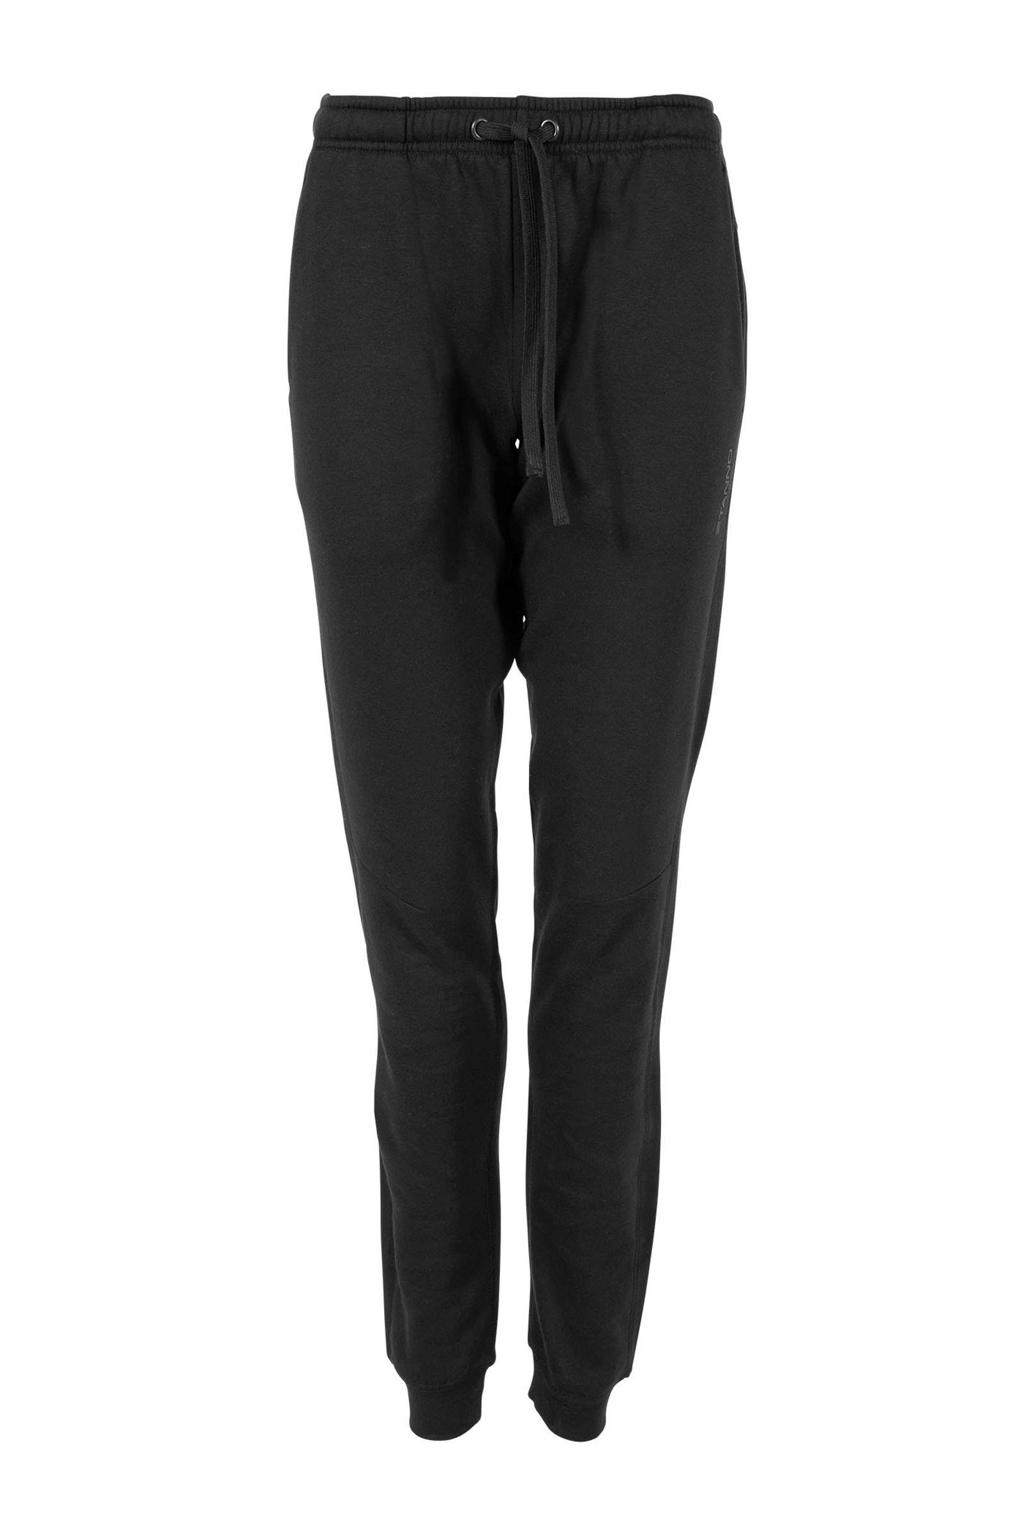 Zwarte dames Stanno joggingbroek van katoen met regular fit en elastische tailleband met koord